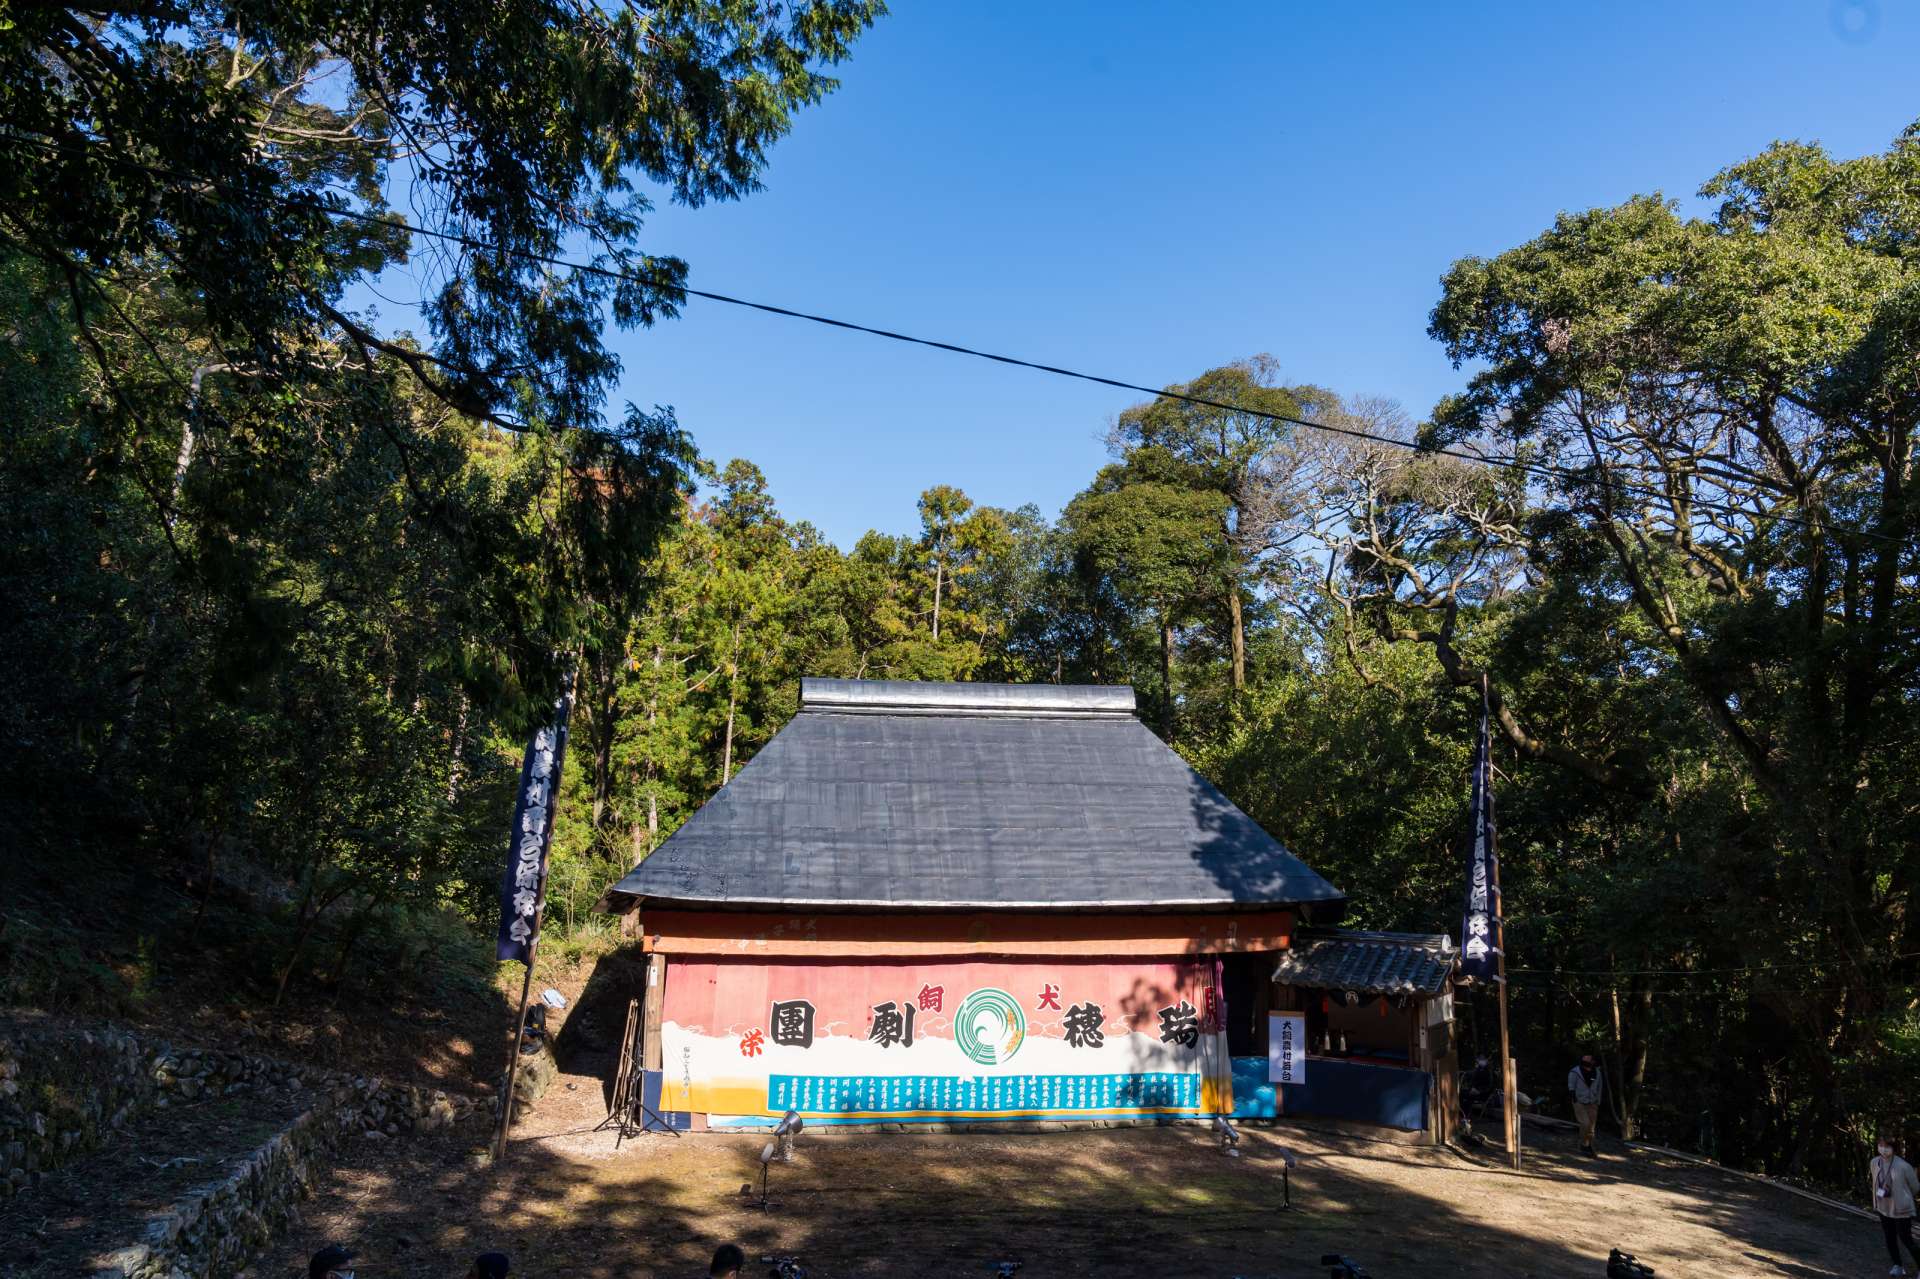 Inukai Rural Stage, un bien culturel précieux qui a été soigneusement préservé en tant que trésor régional